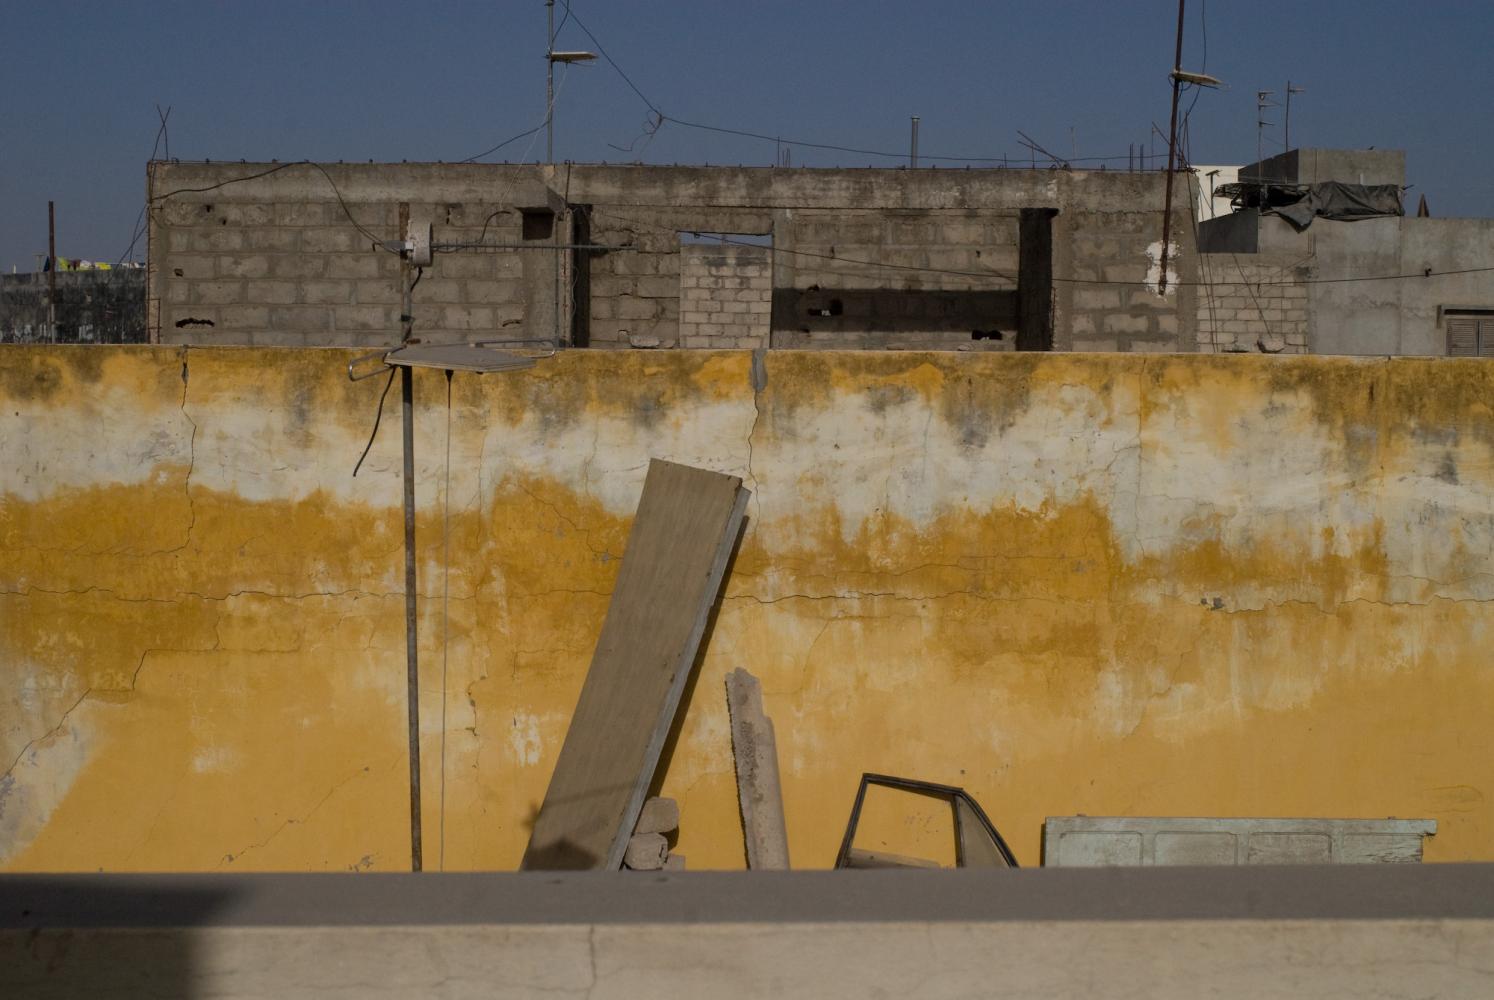 Derrière le muret du toit, un mur jaune auquel sont appuyés une planche, une portière de voiture, une porte de bois. Au-dessus dépasse un immeuble en construction. Dakar, Sénégal, mars 2010.